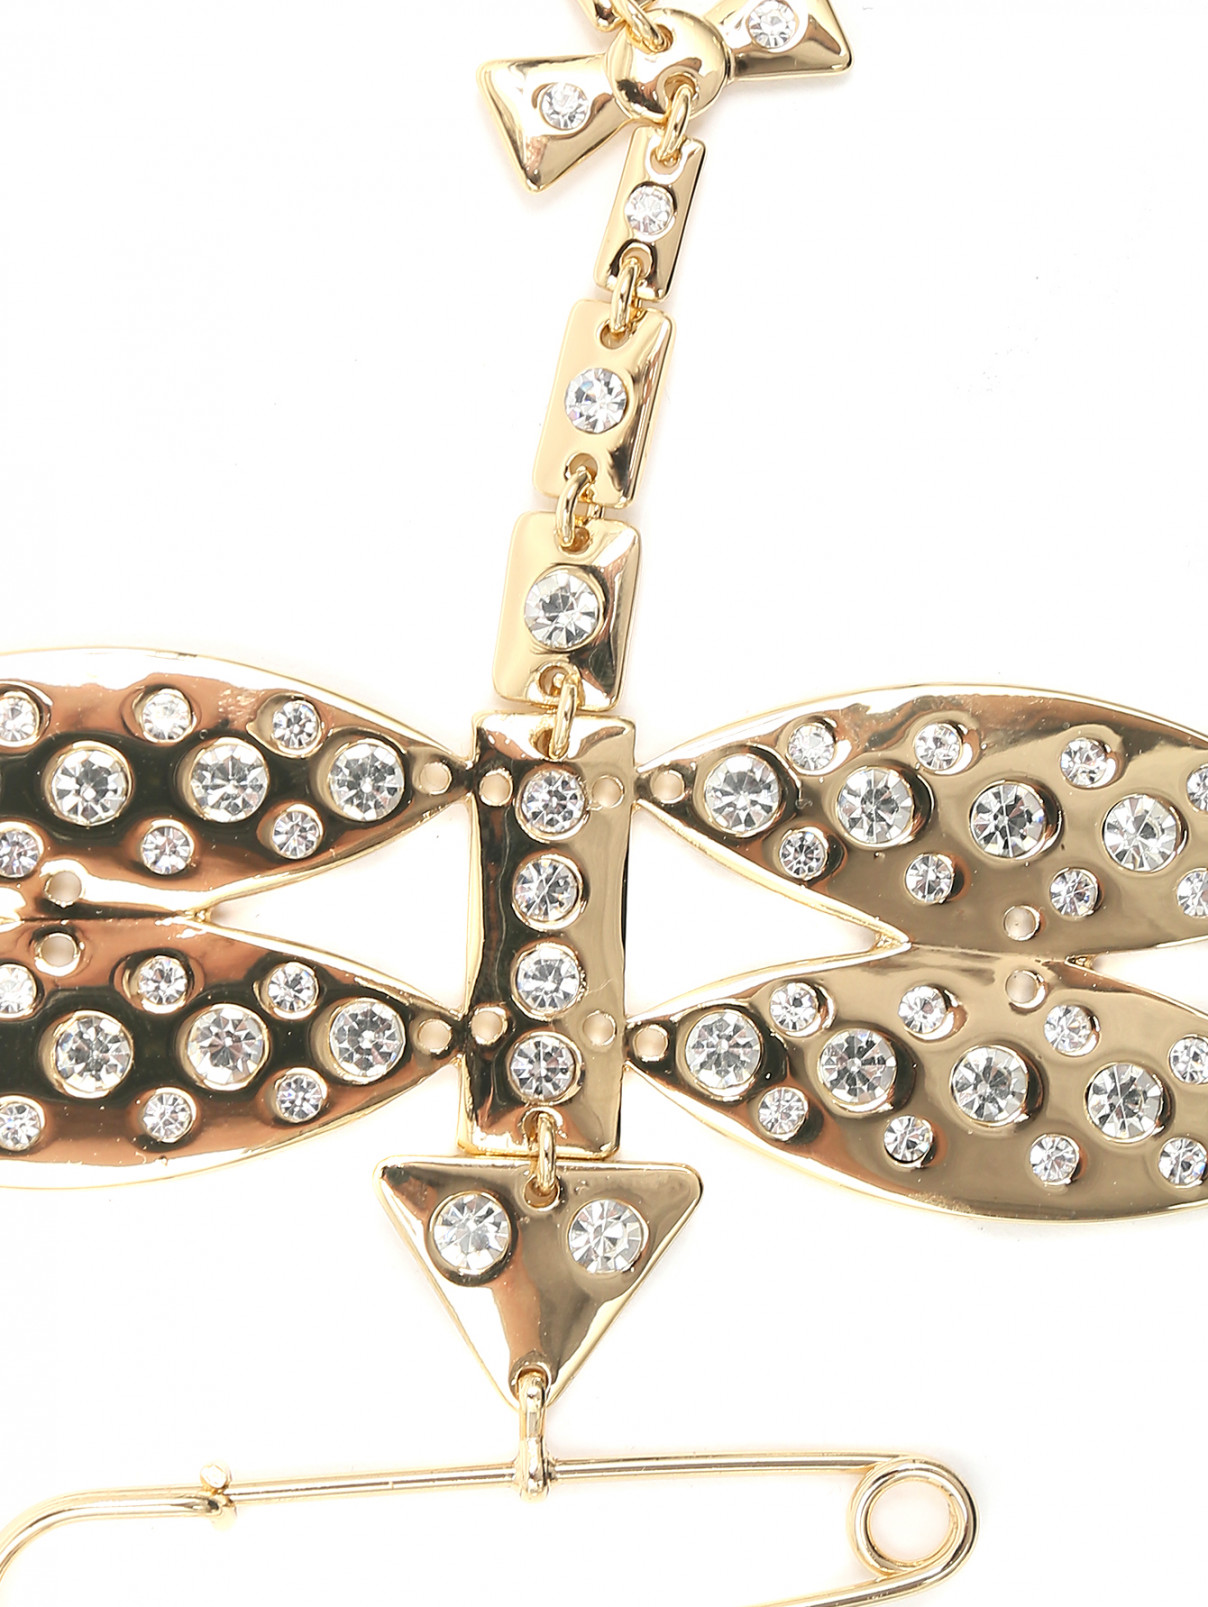 Брошь из металла, декорированная кристаллами Marina Rinaldi  –  Деталь  – Цвет:  Золотой